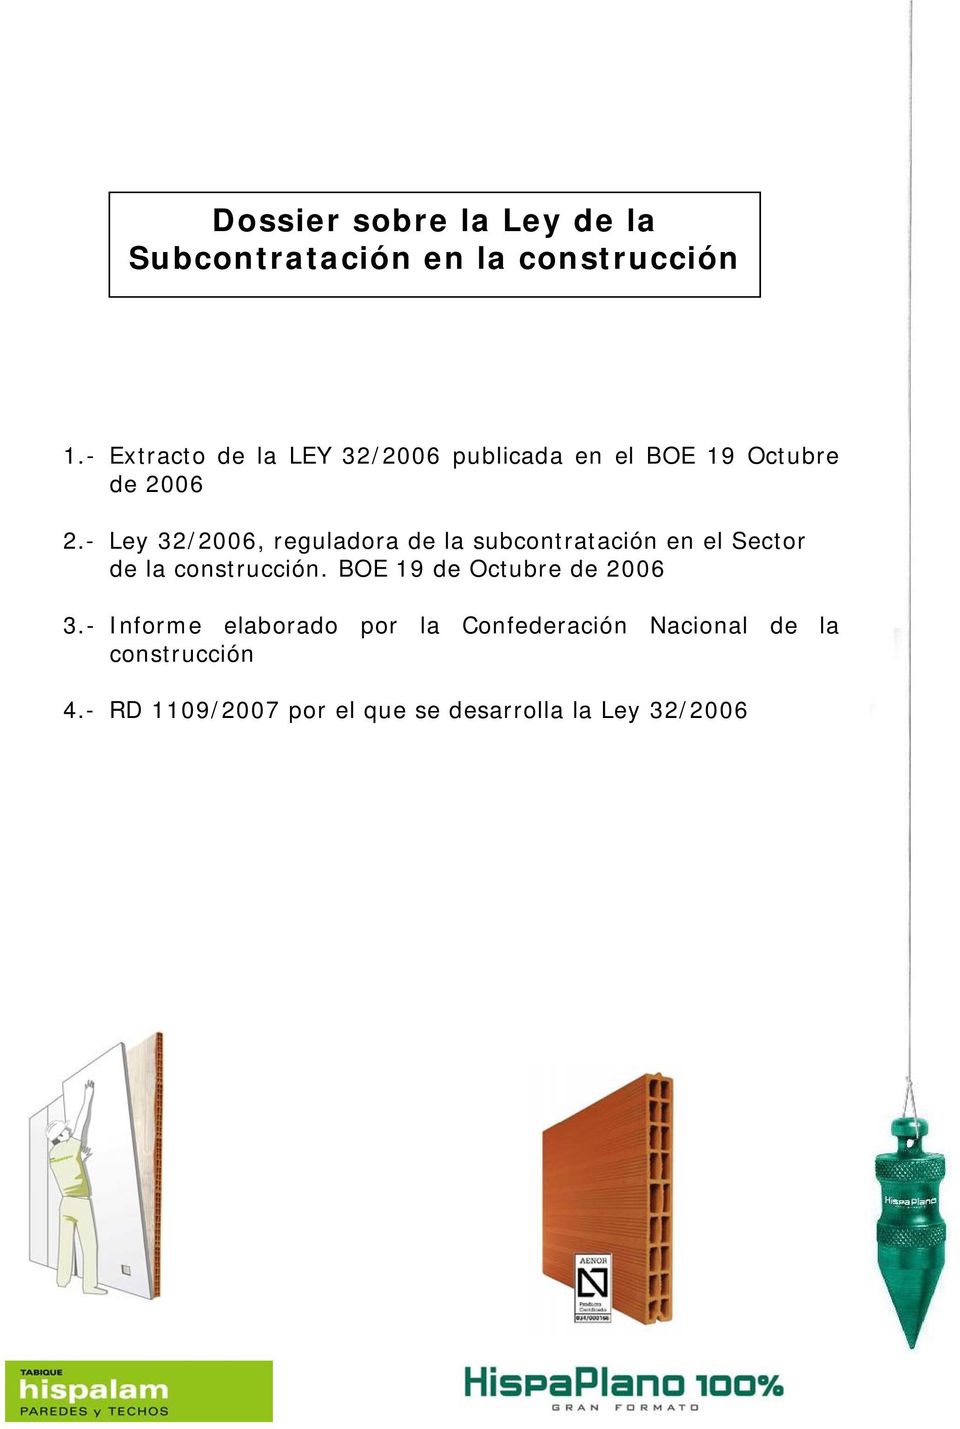 - Ley 32/2006, reguladora de la subcontratación en el Sector de la construcción.